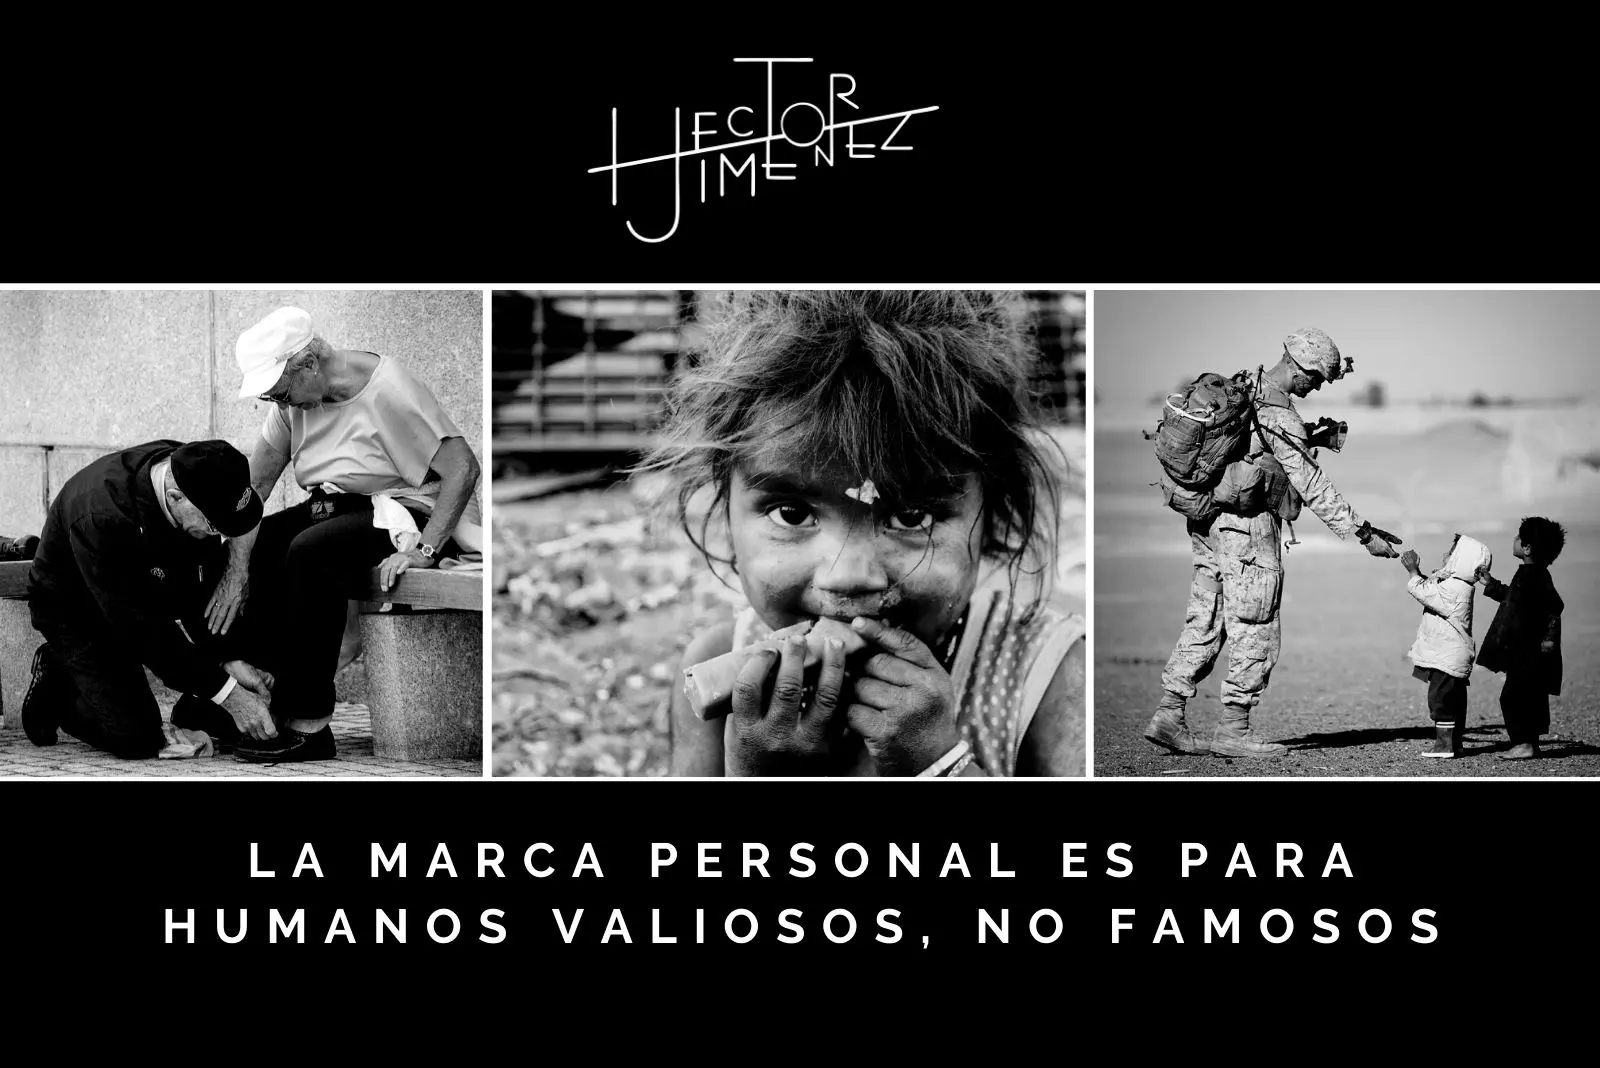 Hector-Jimenez-La-Marca-Personal-Es-Para-Humanos-Valiosos-No-Famosos